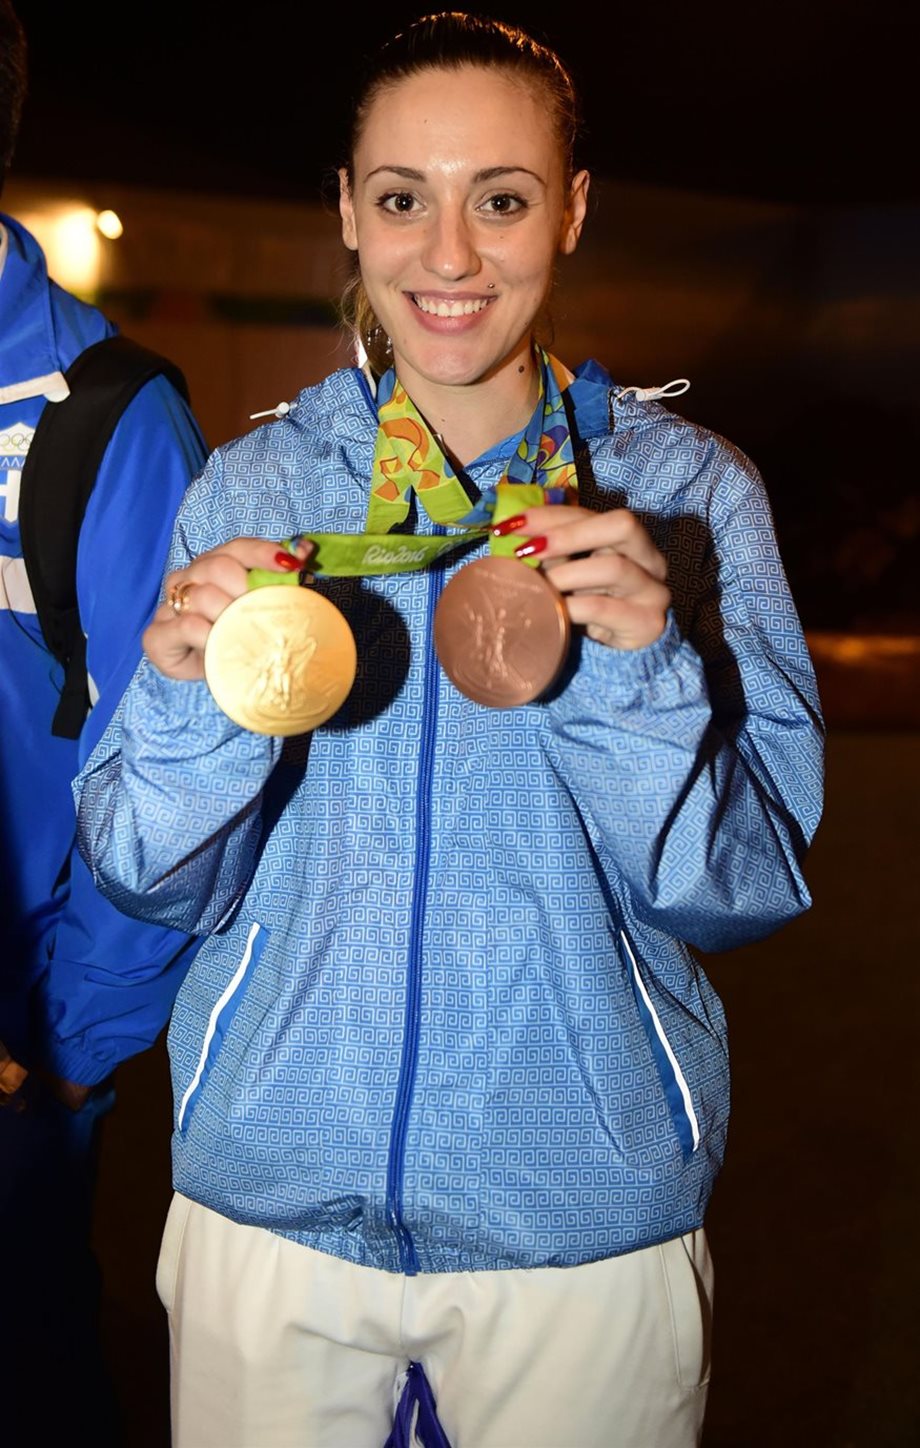 Άννα Κορακάκη: Ασημένιο μετάλλιο στους Ευρωπαϊκούς αγώνες του Μινσκ